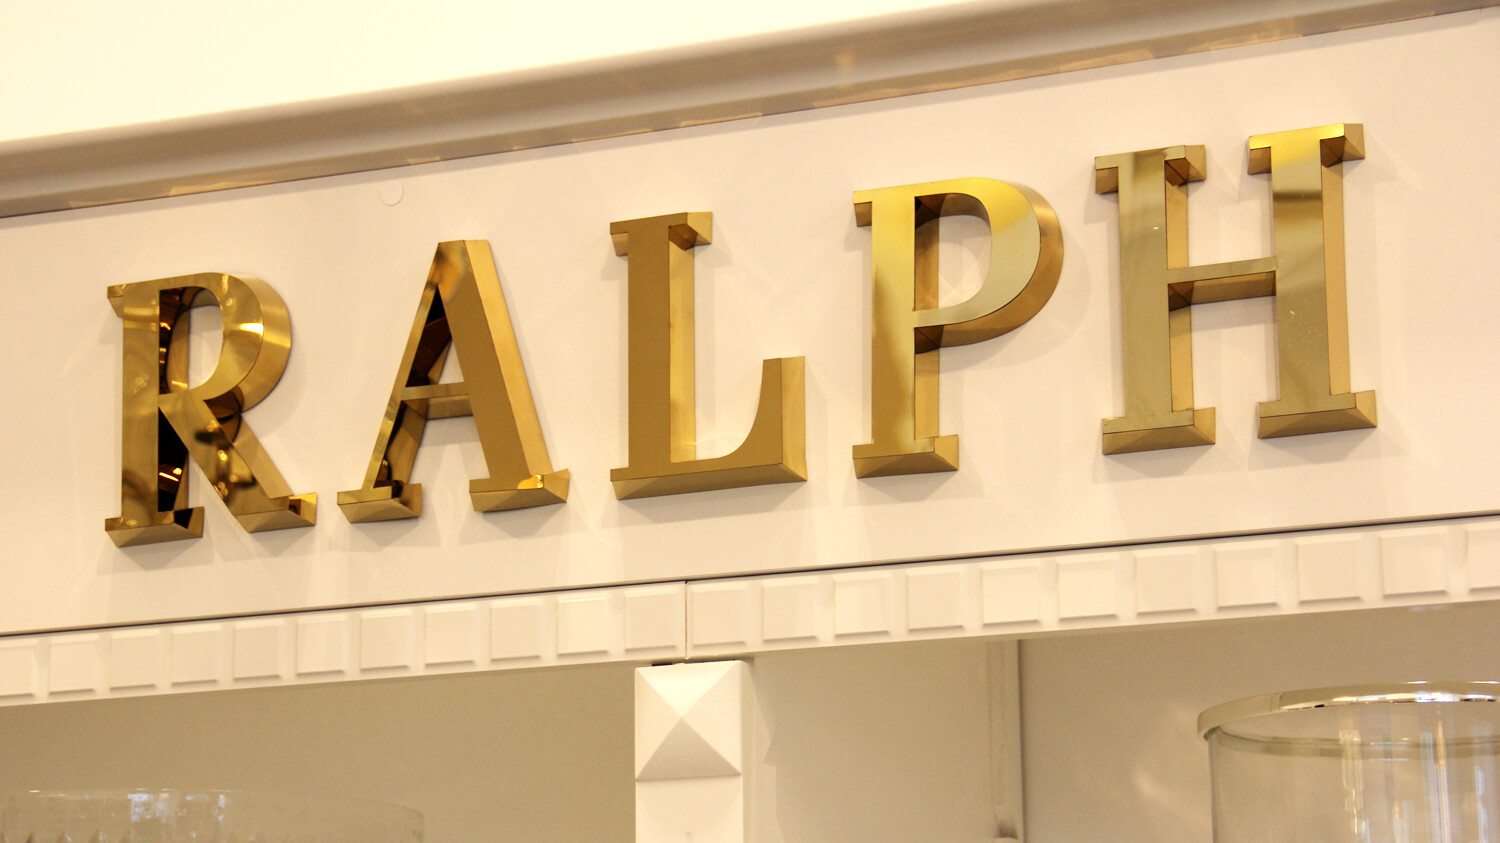 Ralph Lauren - Ralph Lauren - złote litery przestrzenne wykonane z blachy nierdzewnej